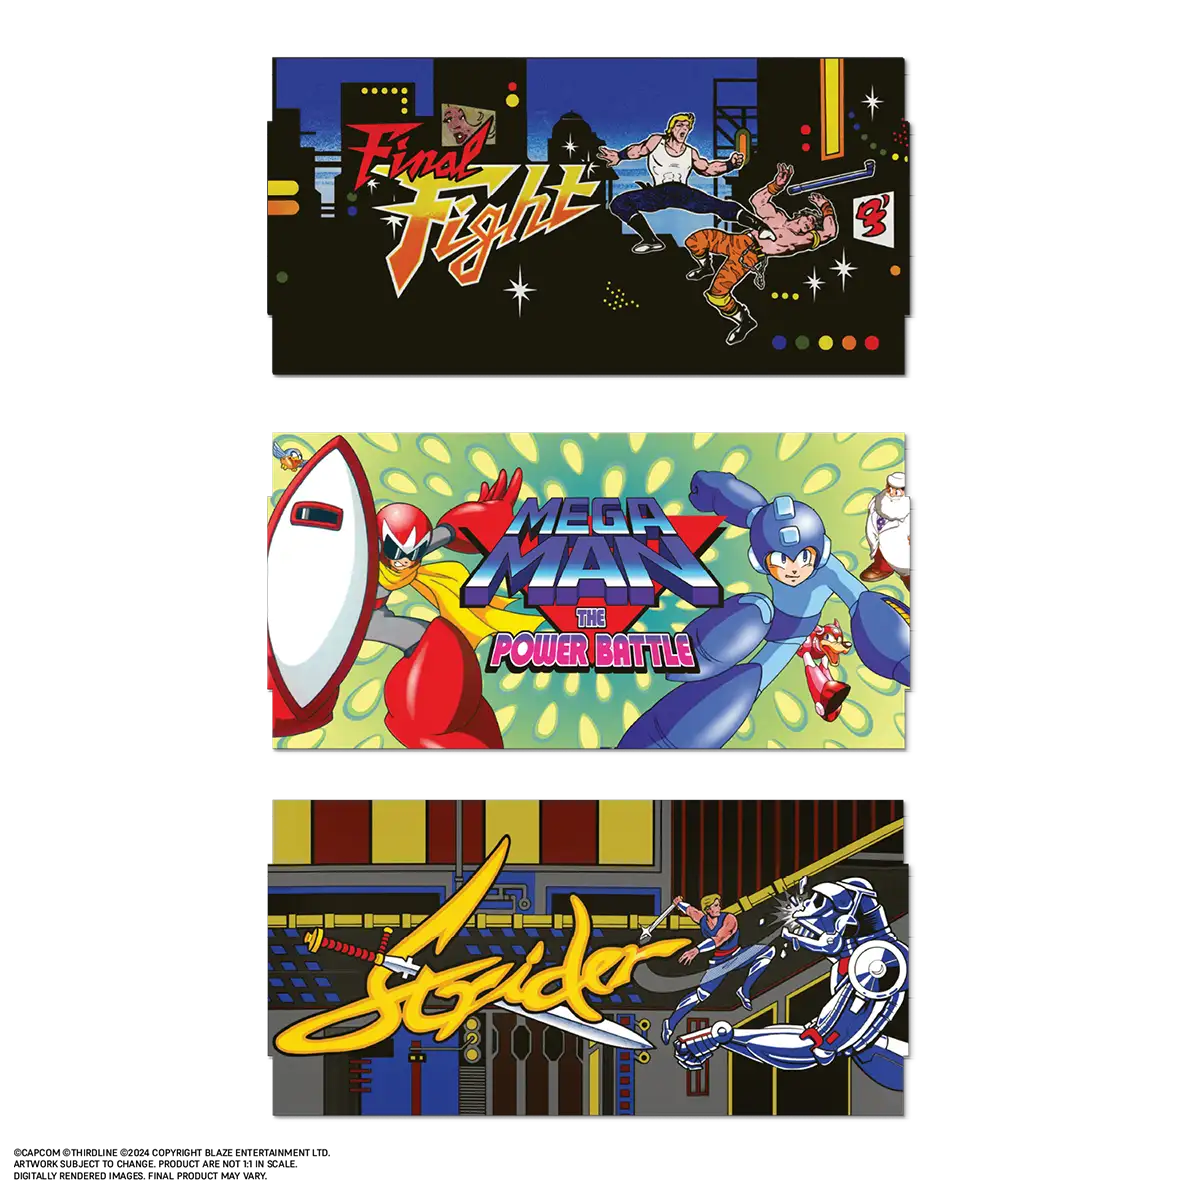 Blaze Evercade Alpha Mega Man Bartop Arcade Image 19